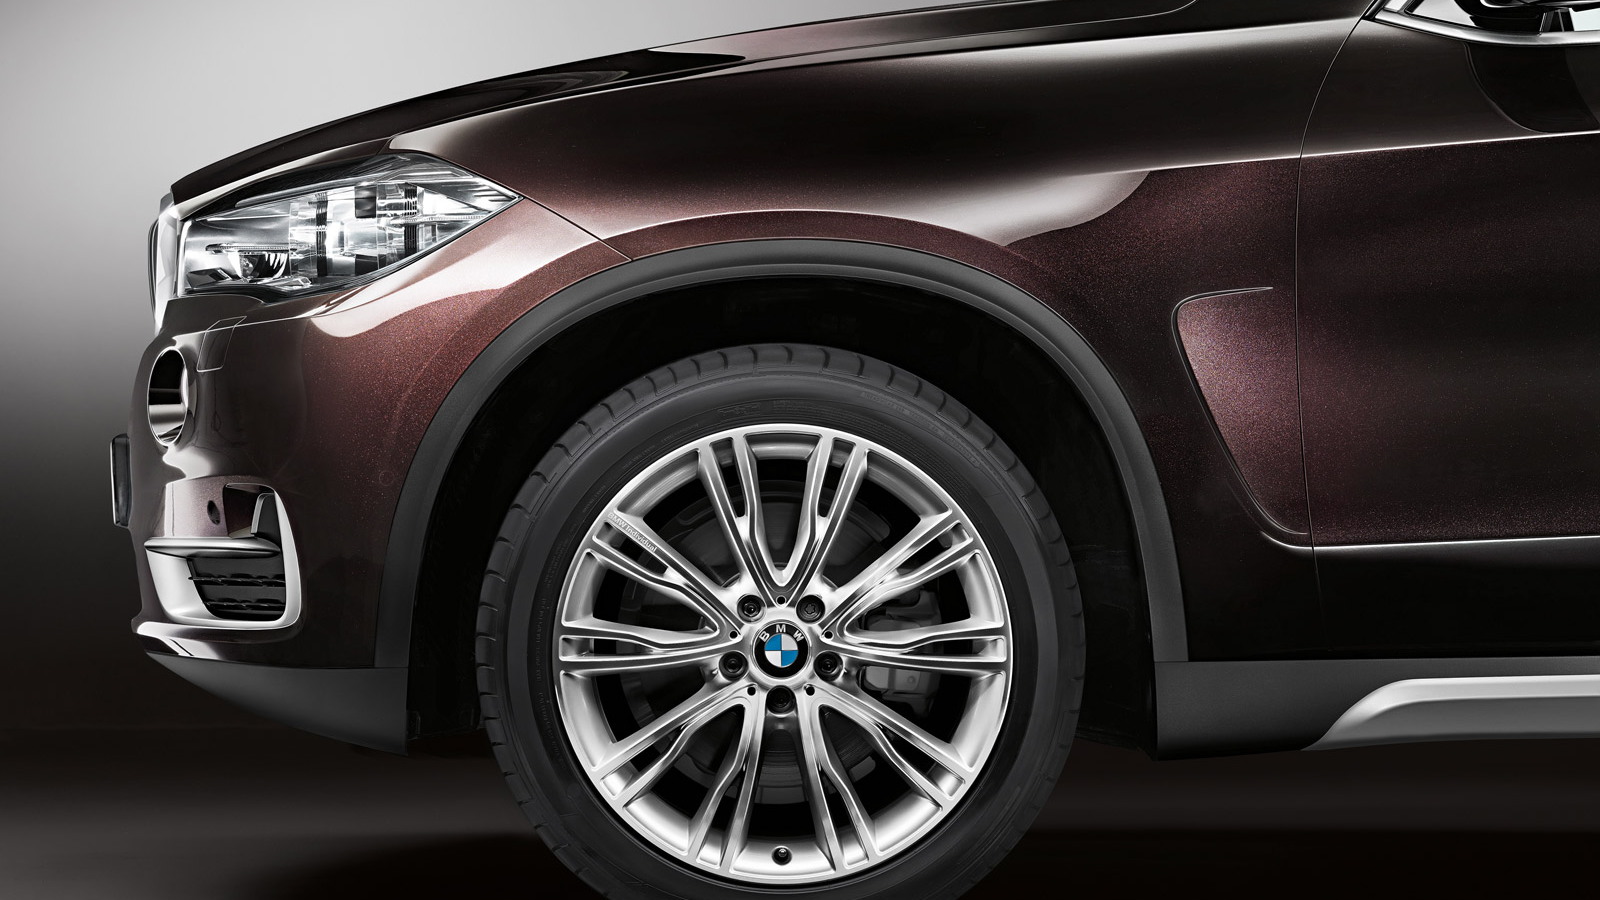 2014 BMW X5 enhanced by BMW Individual